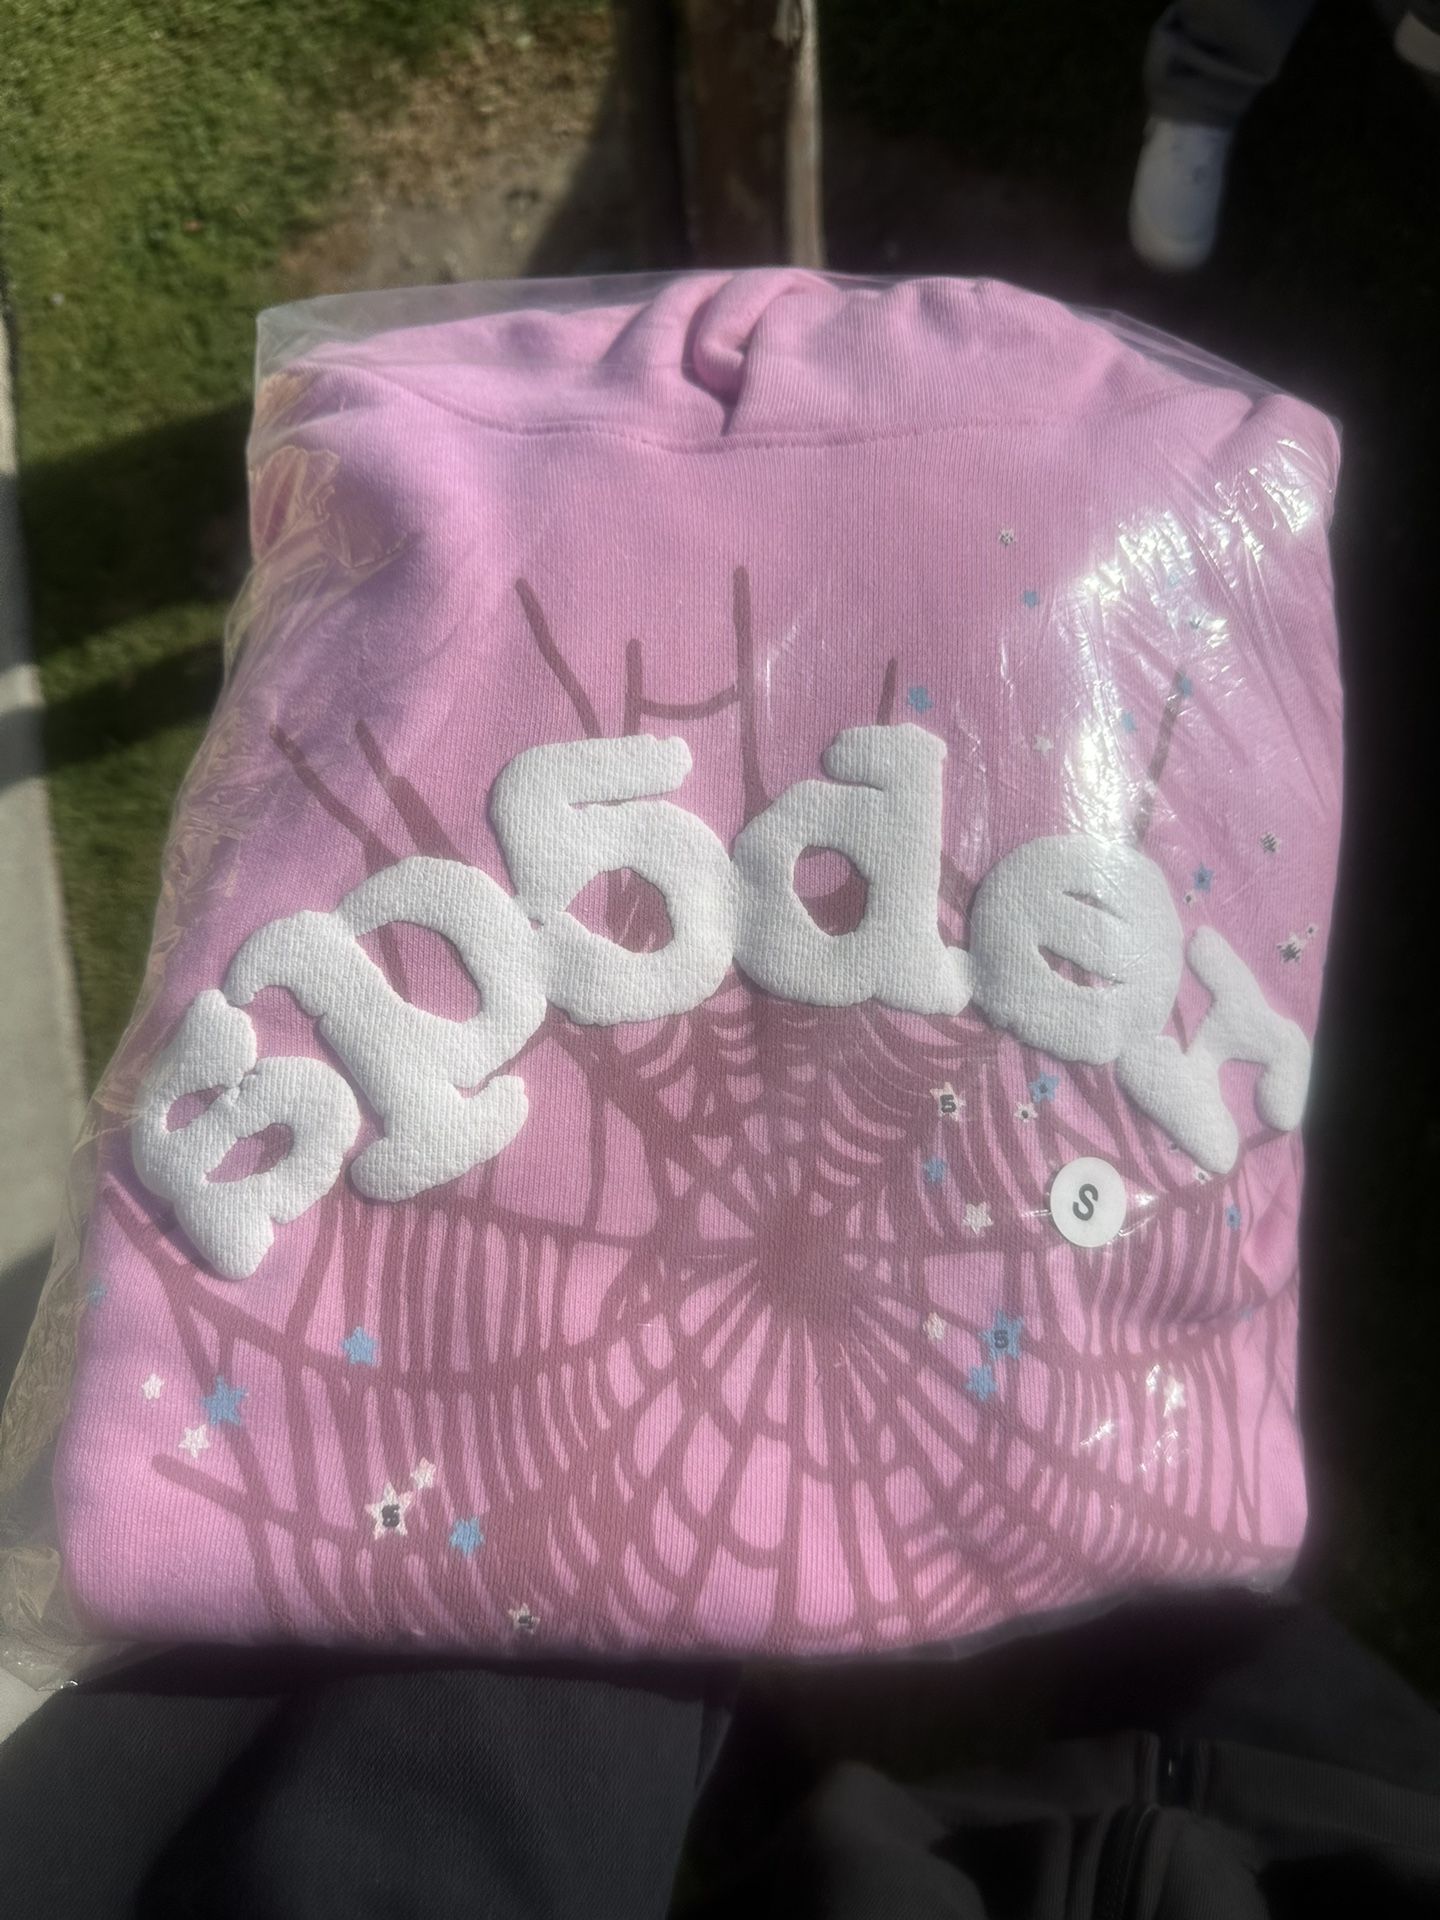 OG pink sp5der hoodie 